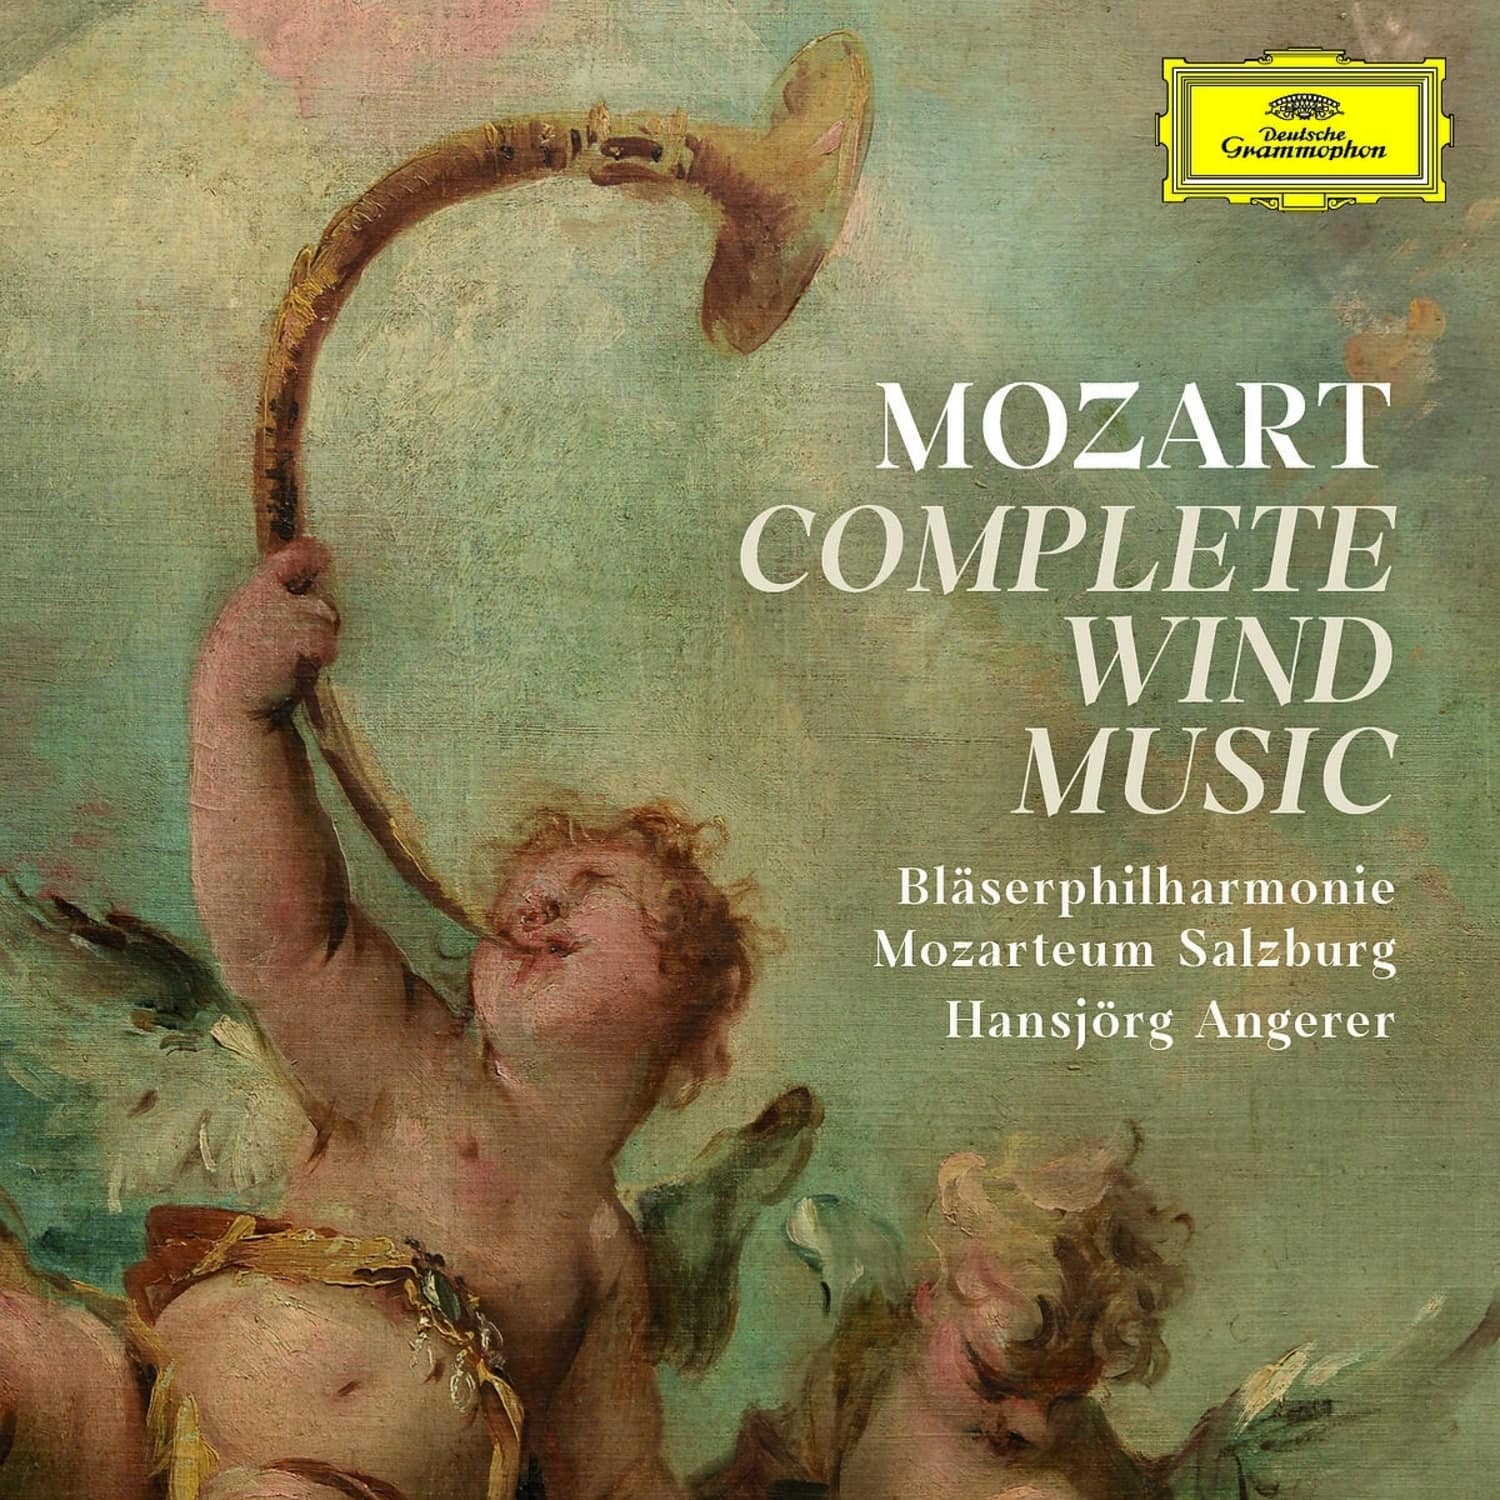 Blserphilharmonie Mozarteum Salzburg - MOZART: COMPLETE WIND MUSIC 